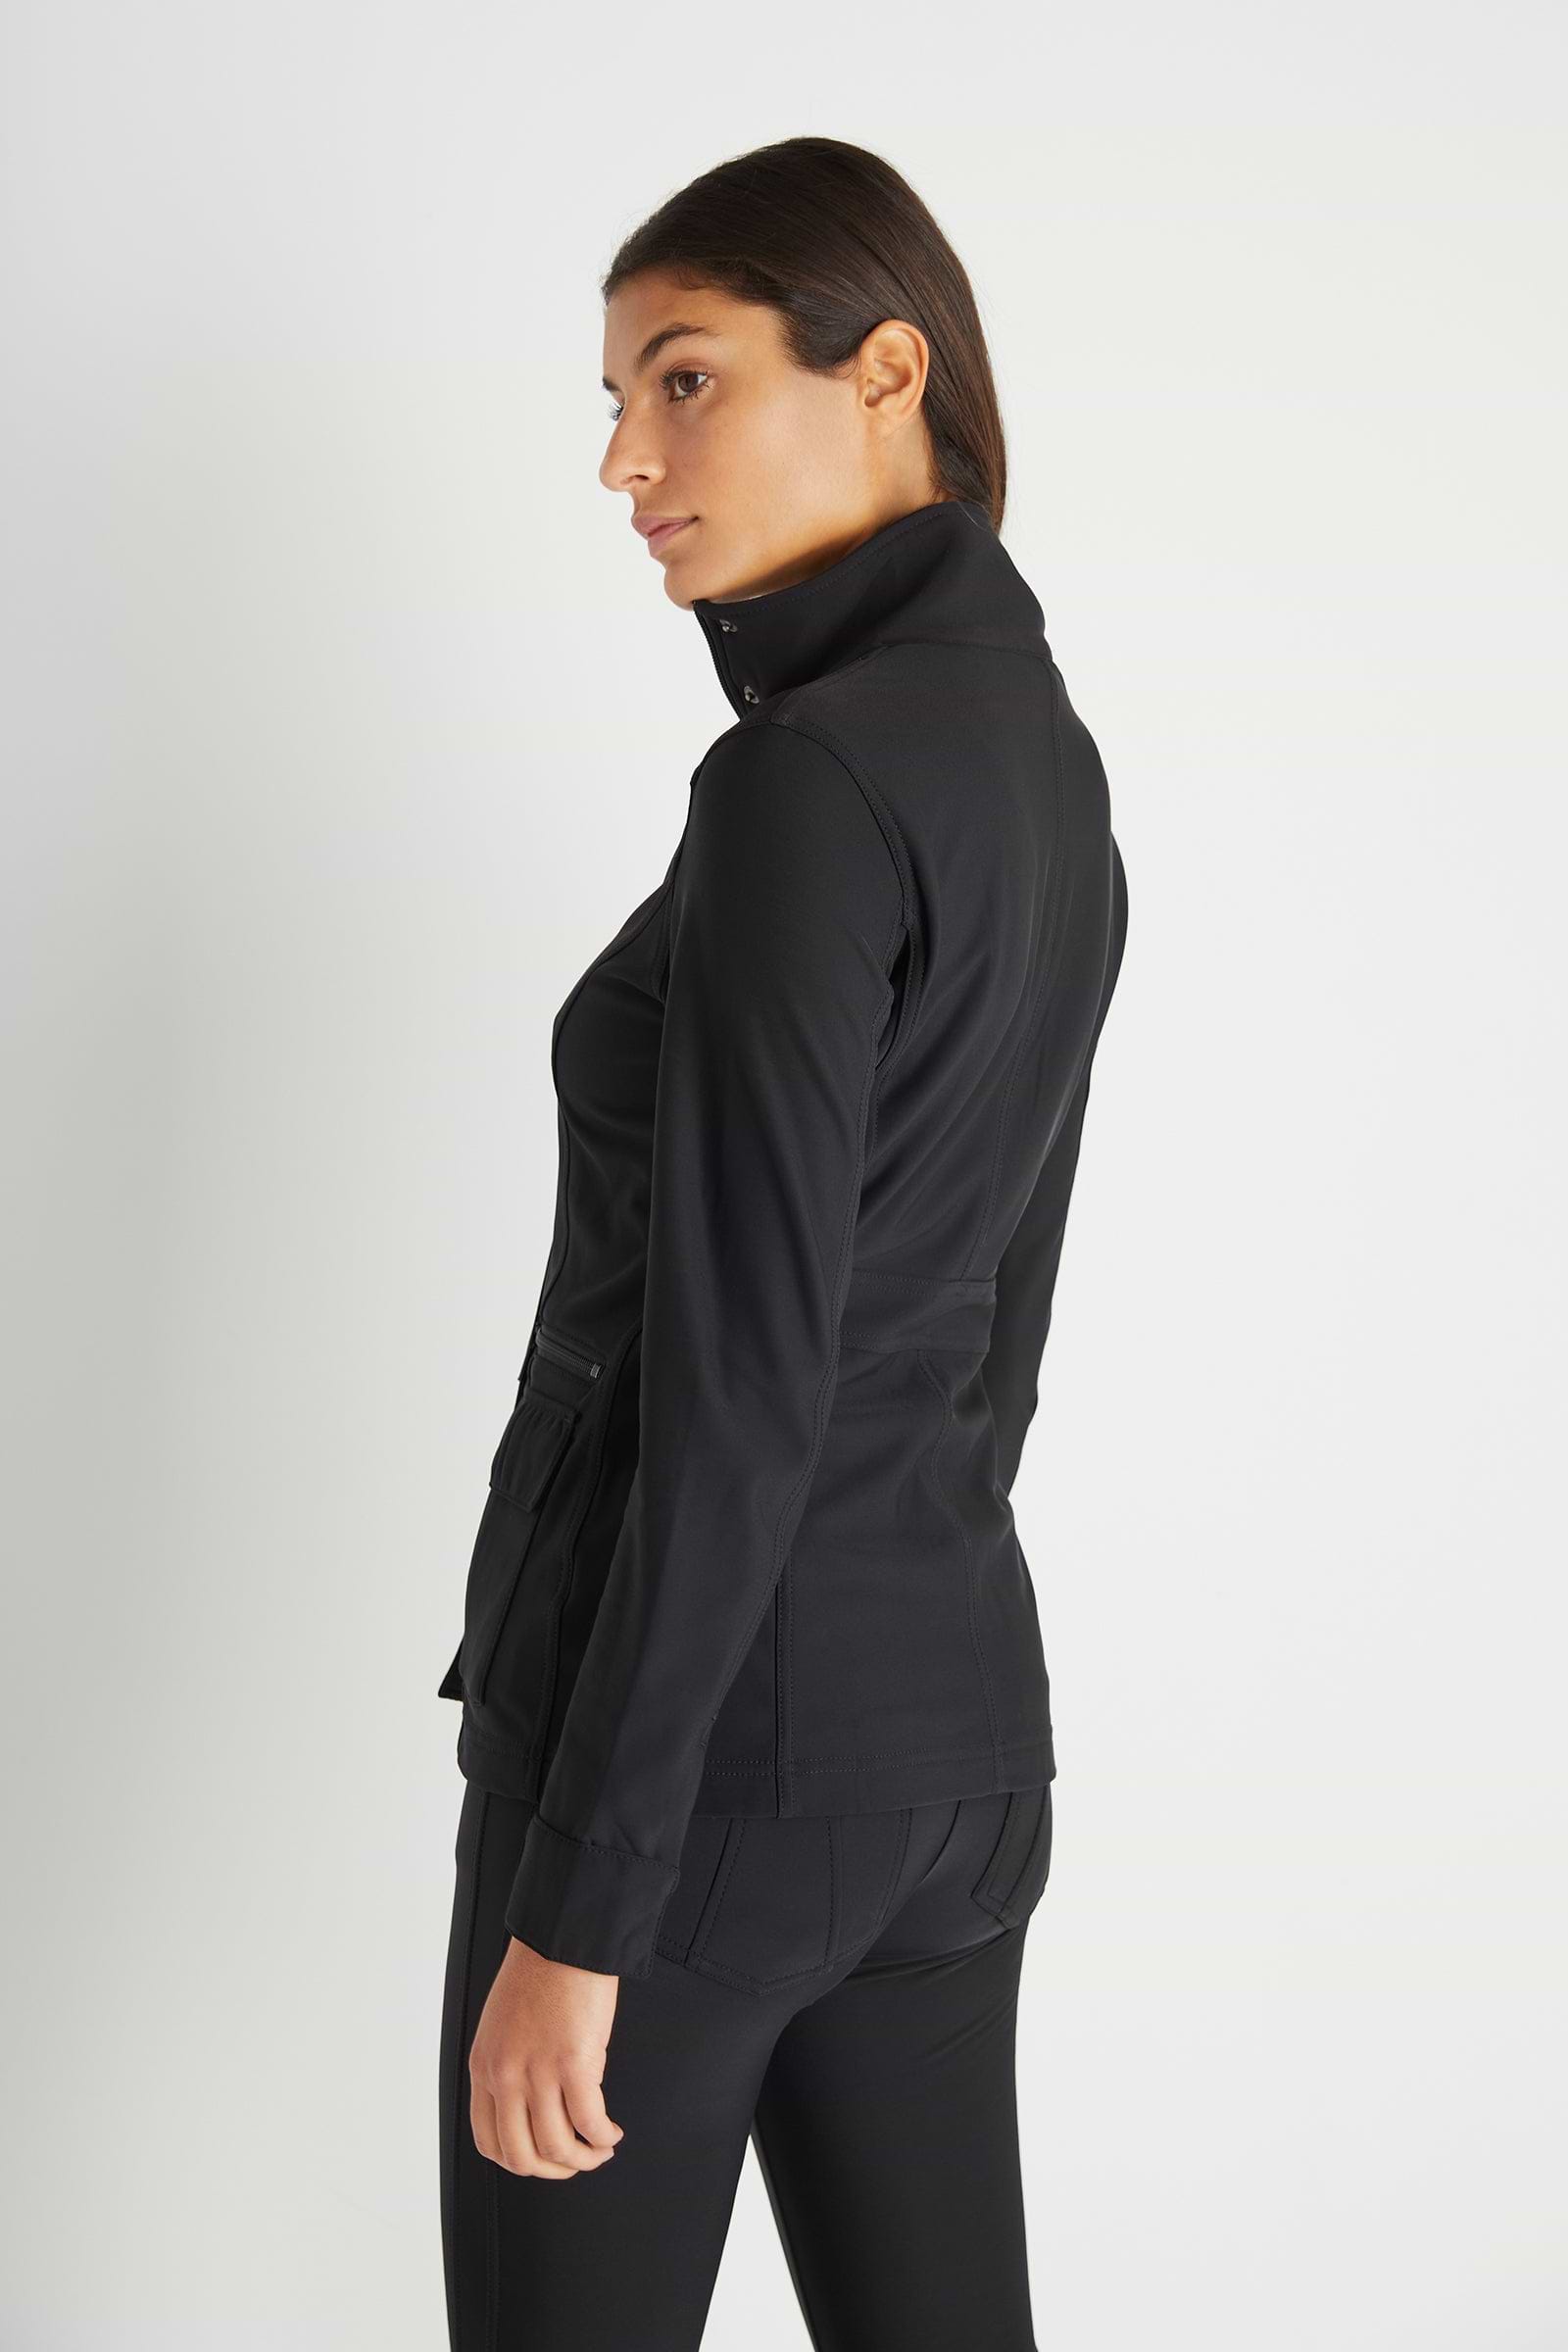 The Best Travel Fleece-Lined Jacket. Woman Showing the Side Profile of a Kenya Cozy Fleece-Lined Jacket in Black